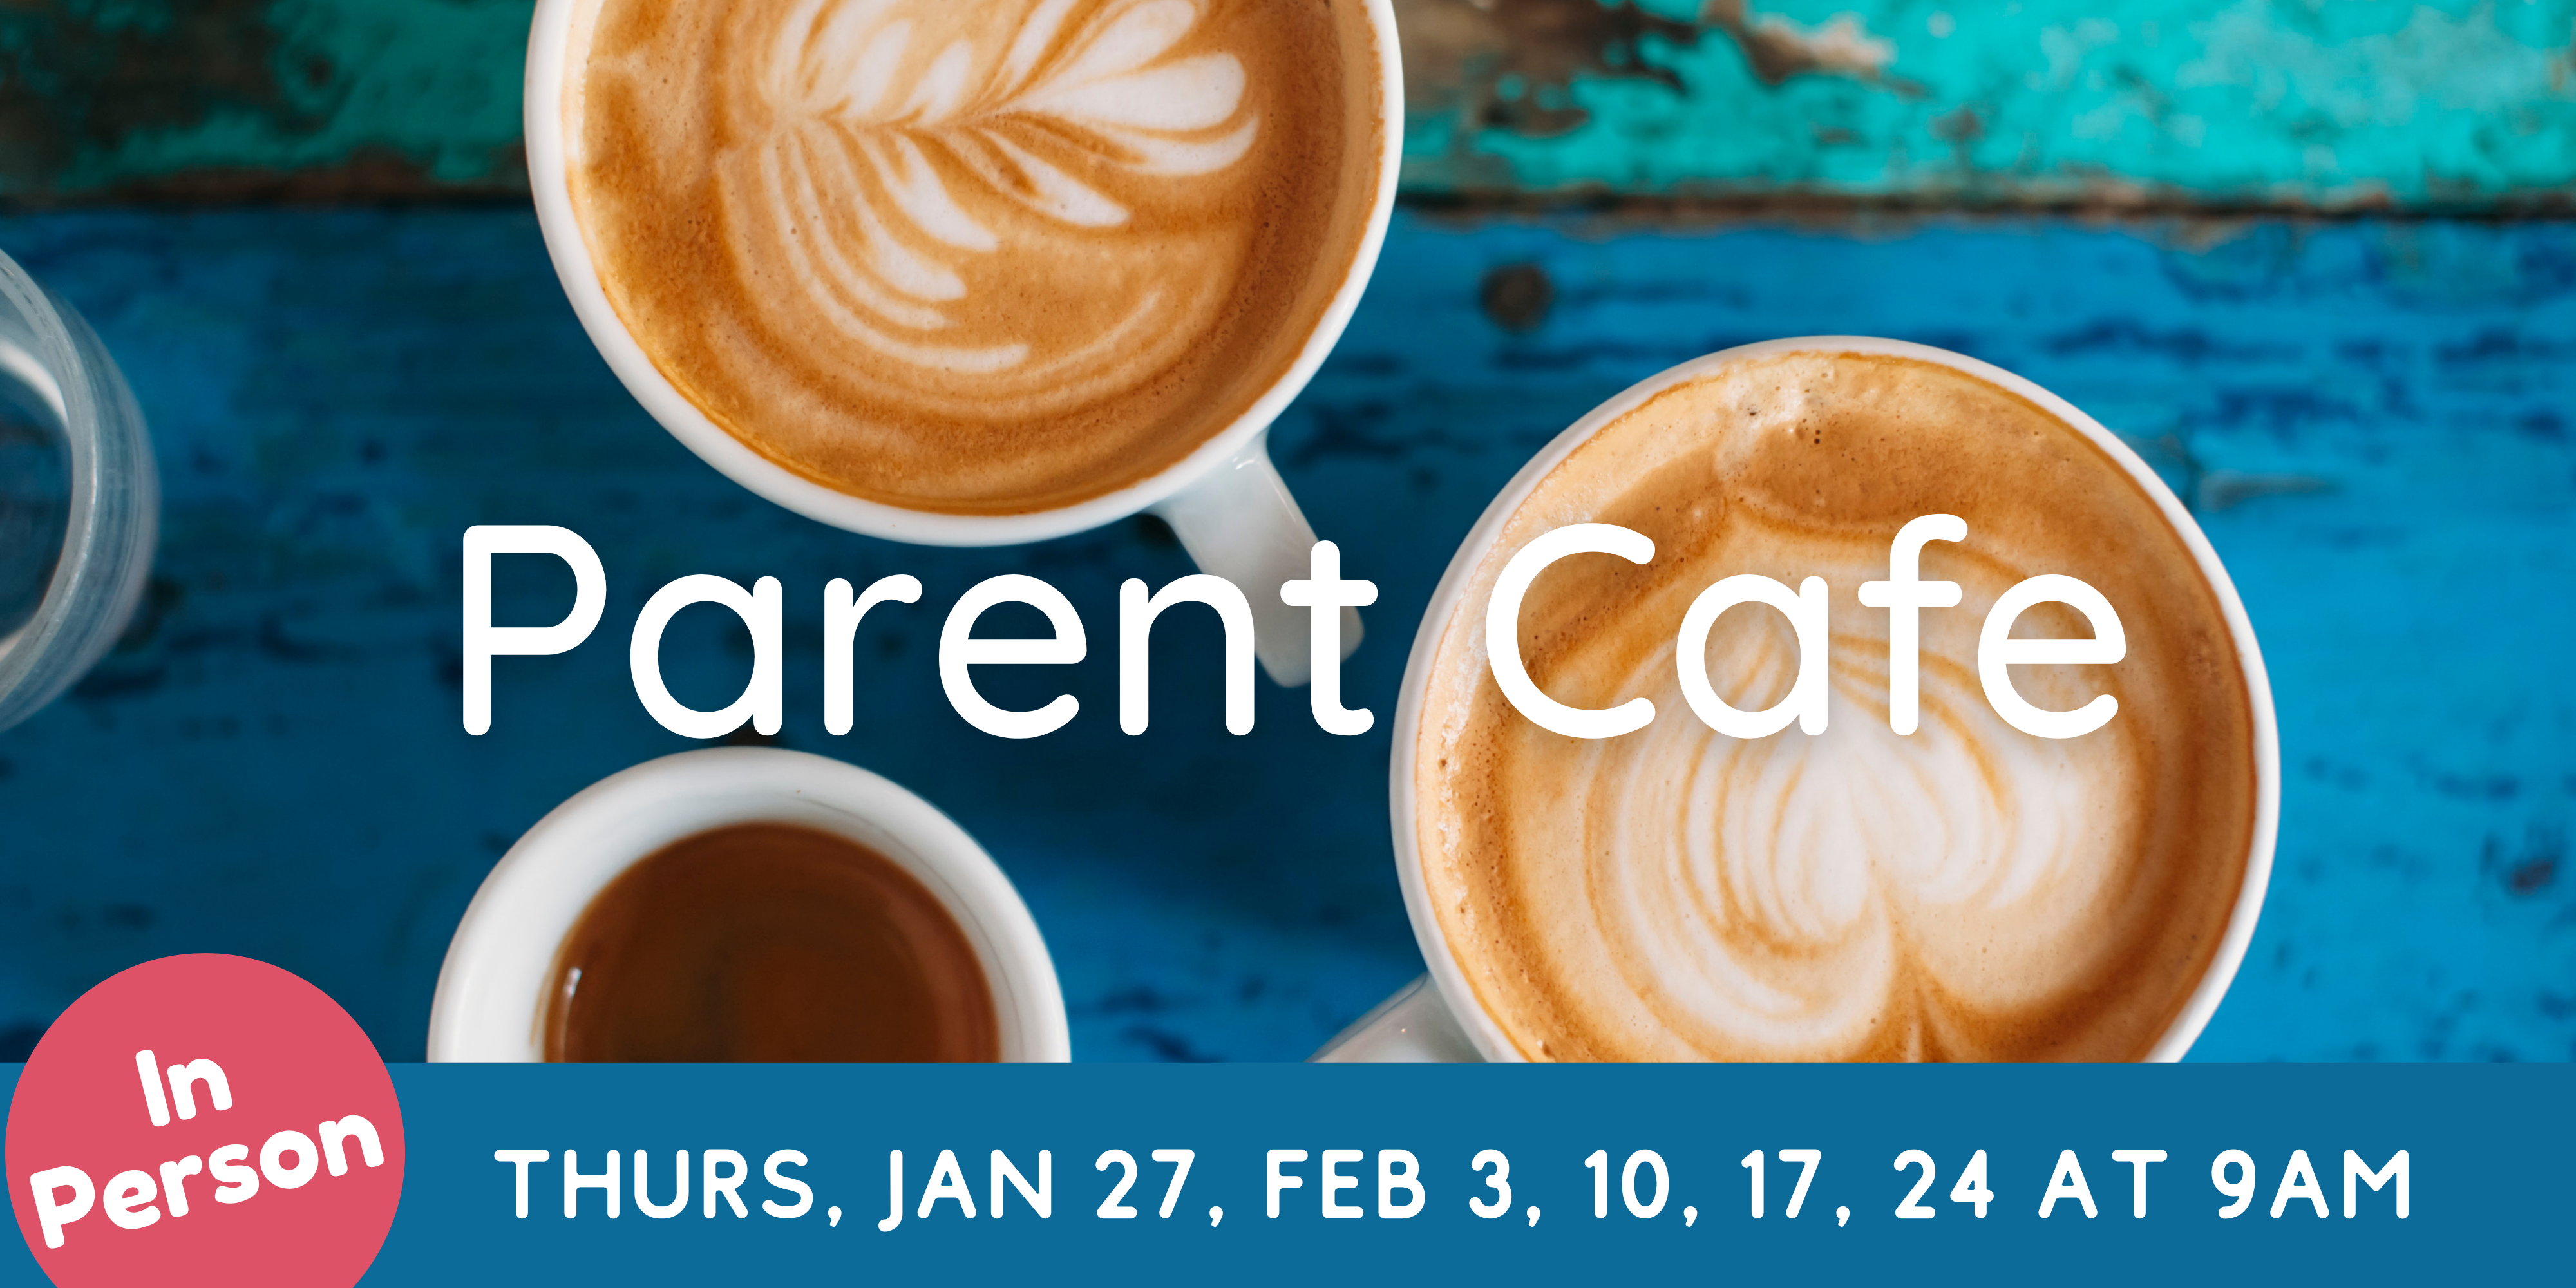 Parent Cafe registration link